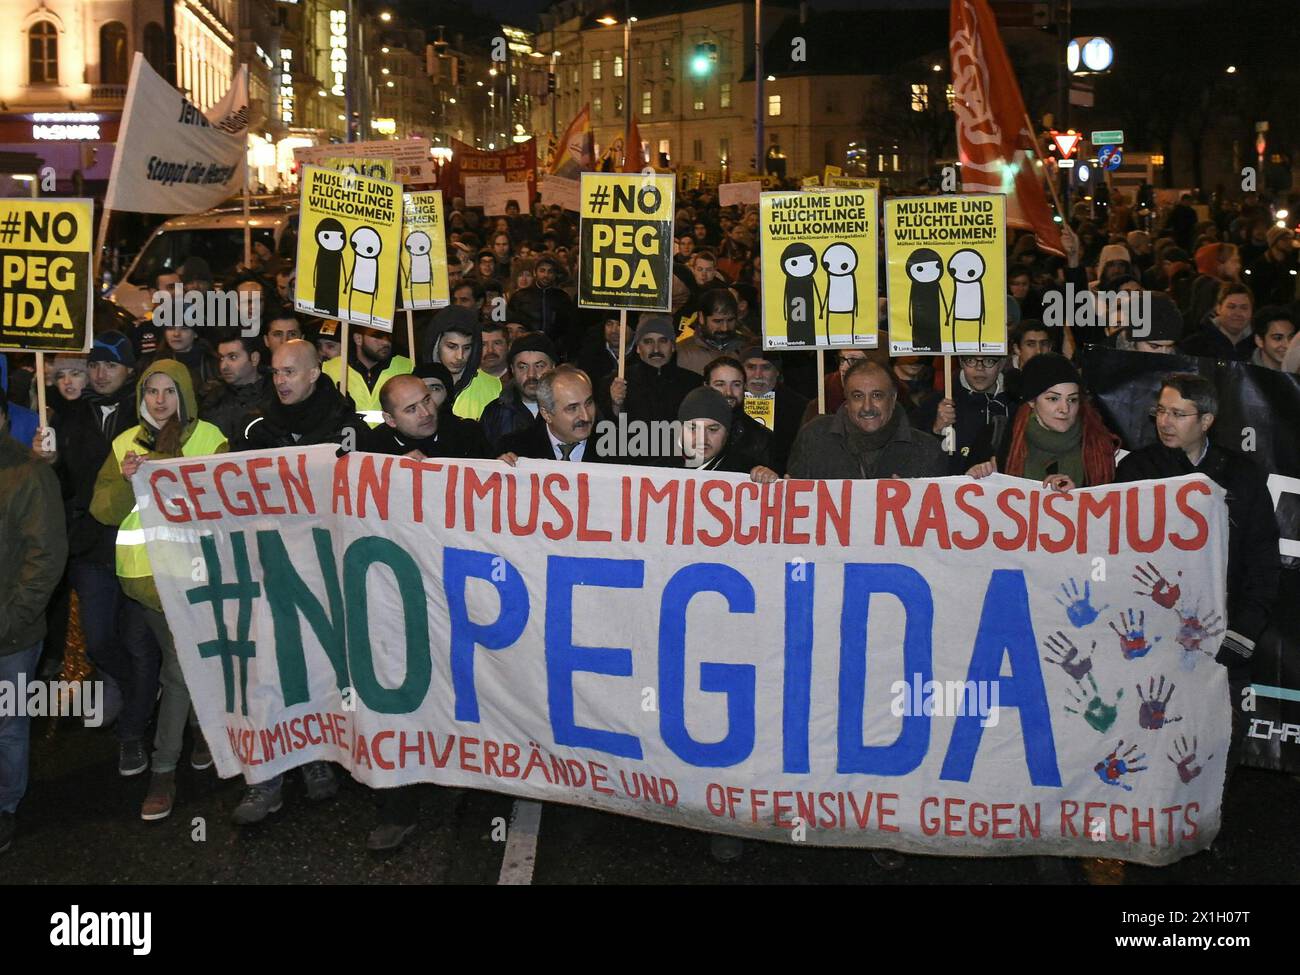 Manifestation contre le rassemblement du mouvement anti-islam Pegida-Vienne (les Européens patriotiques contre l'islamisation de l'Occident) à Vienne, Autriche, le 2 février 2015. - 20150202 PD3275 - Rechteinfo : droits gérés (RM) Banque D'Images